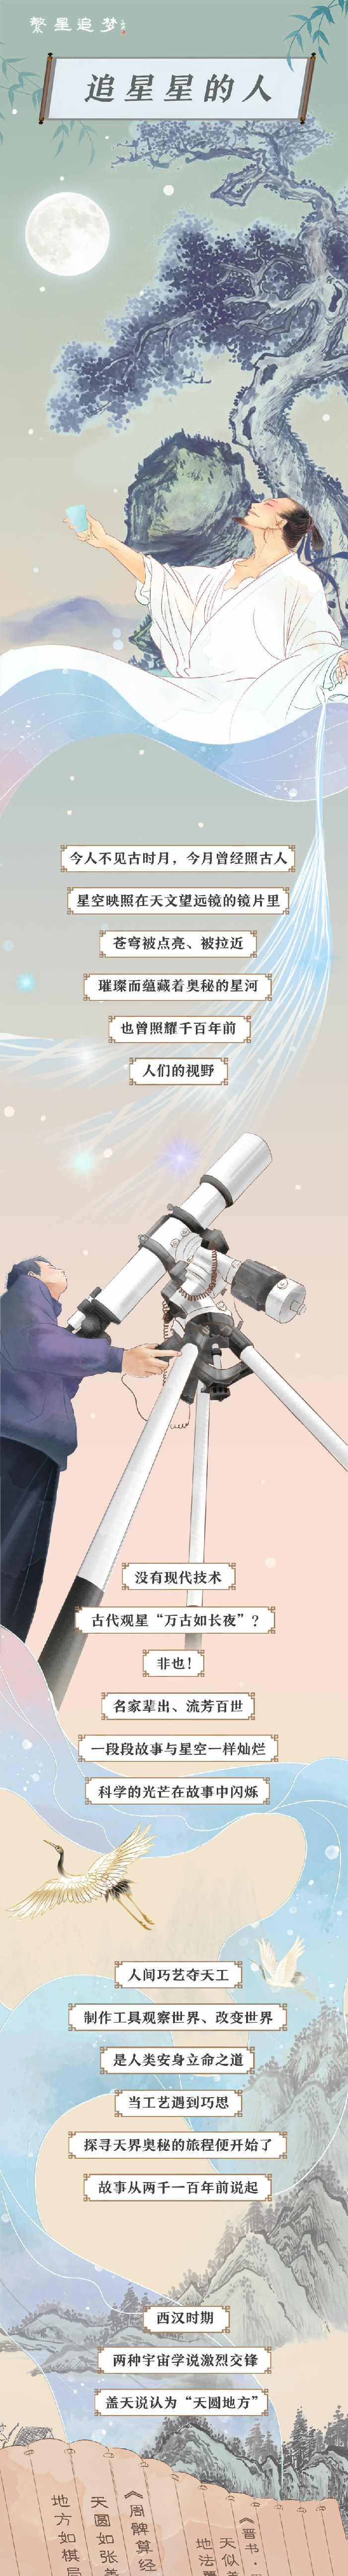 科普中国繁星追梦|是天文学家也是能工巧匠 千百年前他们这样仰望星空